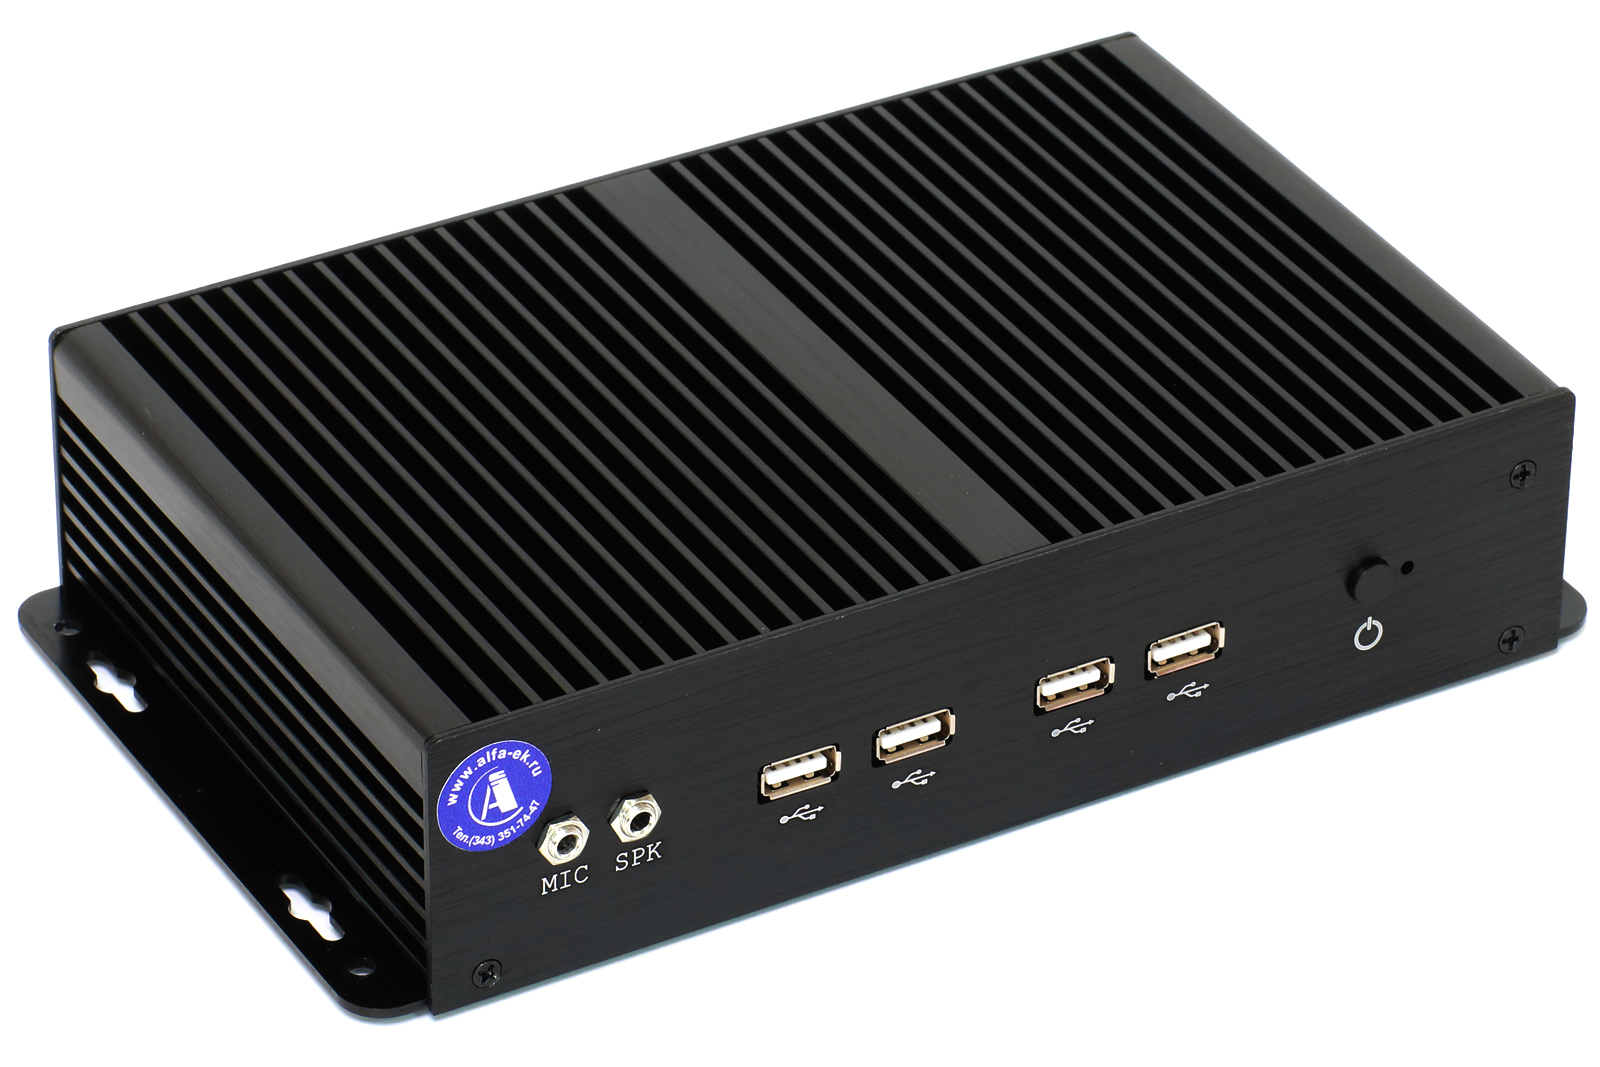 POS-компьютер POSCenter BOX PC 4 (J1900, 4Gb/120, bp, VGA, HDMI, 6*RS, 8*USB) fanless, без ОС